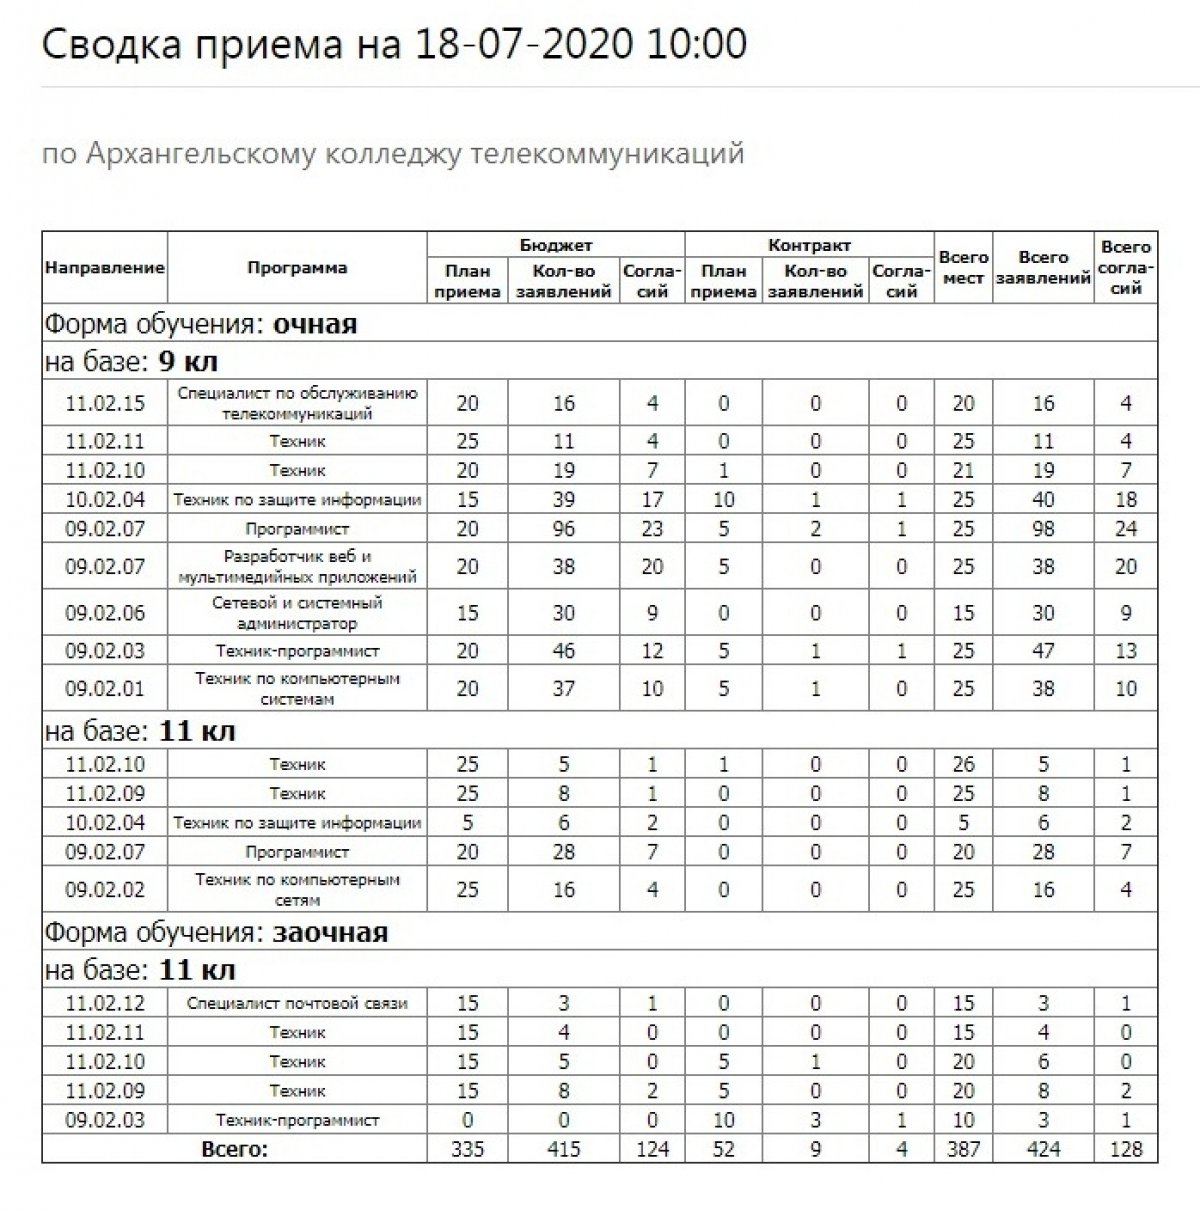 Самая свежая информация о количестве поданных заявлений на нашем сайте: http://arcotel.ru/abitur/svodka/